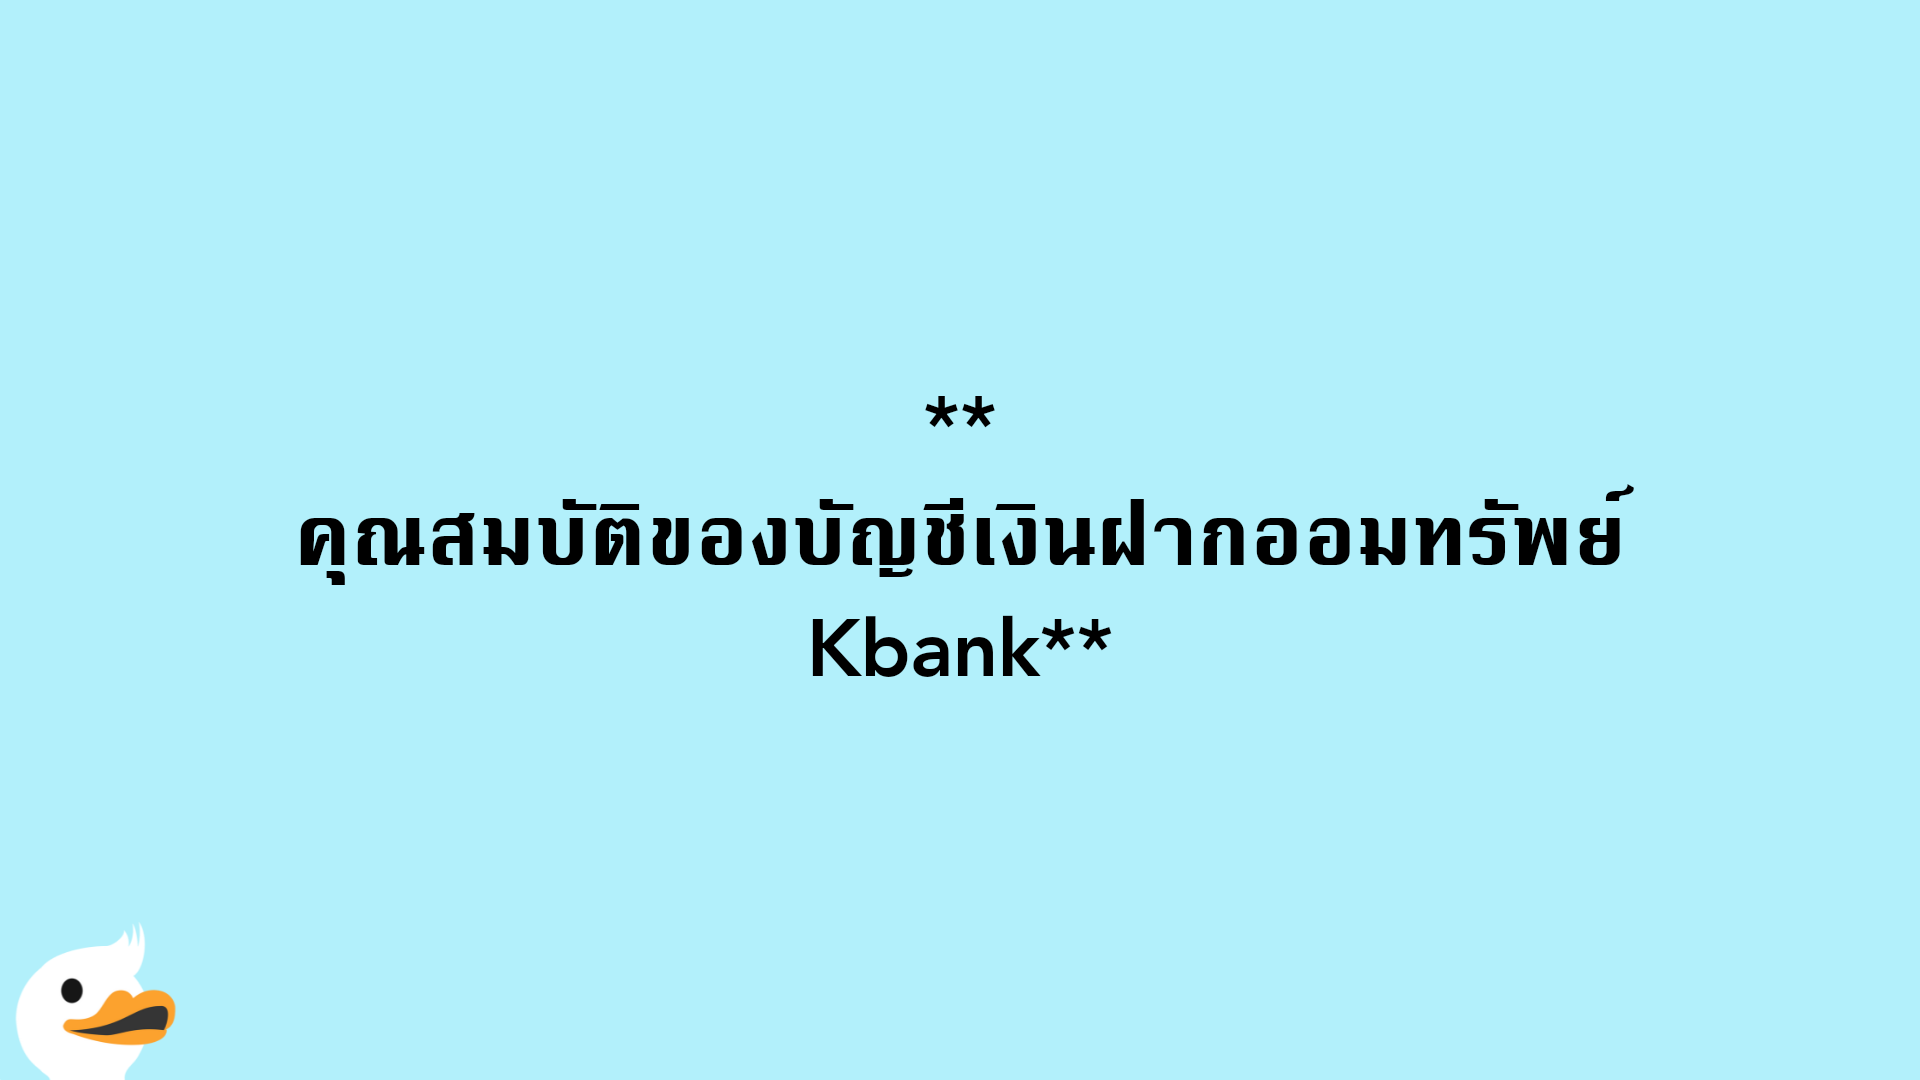 คุณสมบัติของบัญชีเงินฝากออมทรัพย์ Kbank